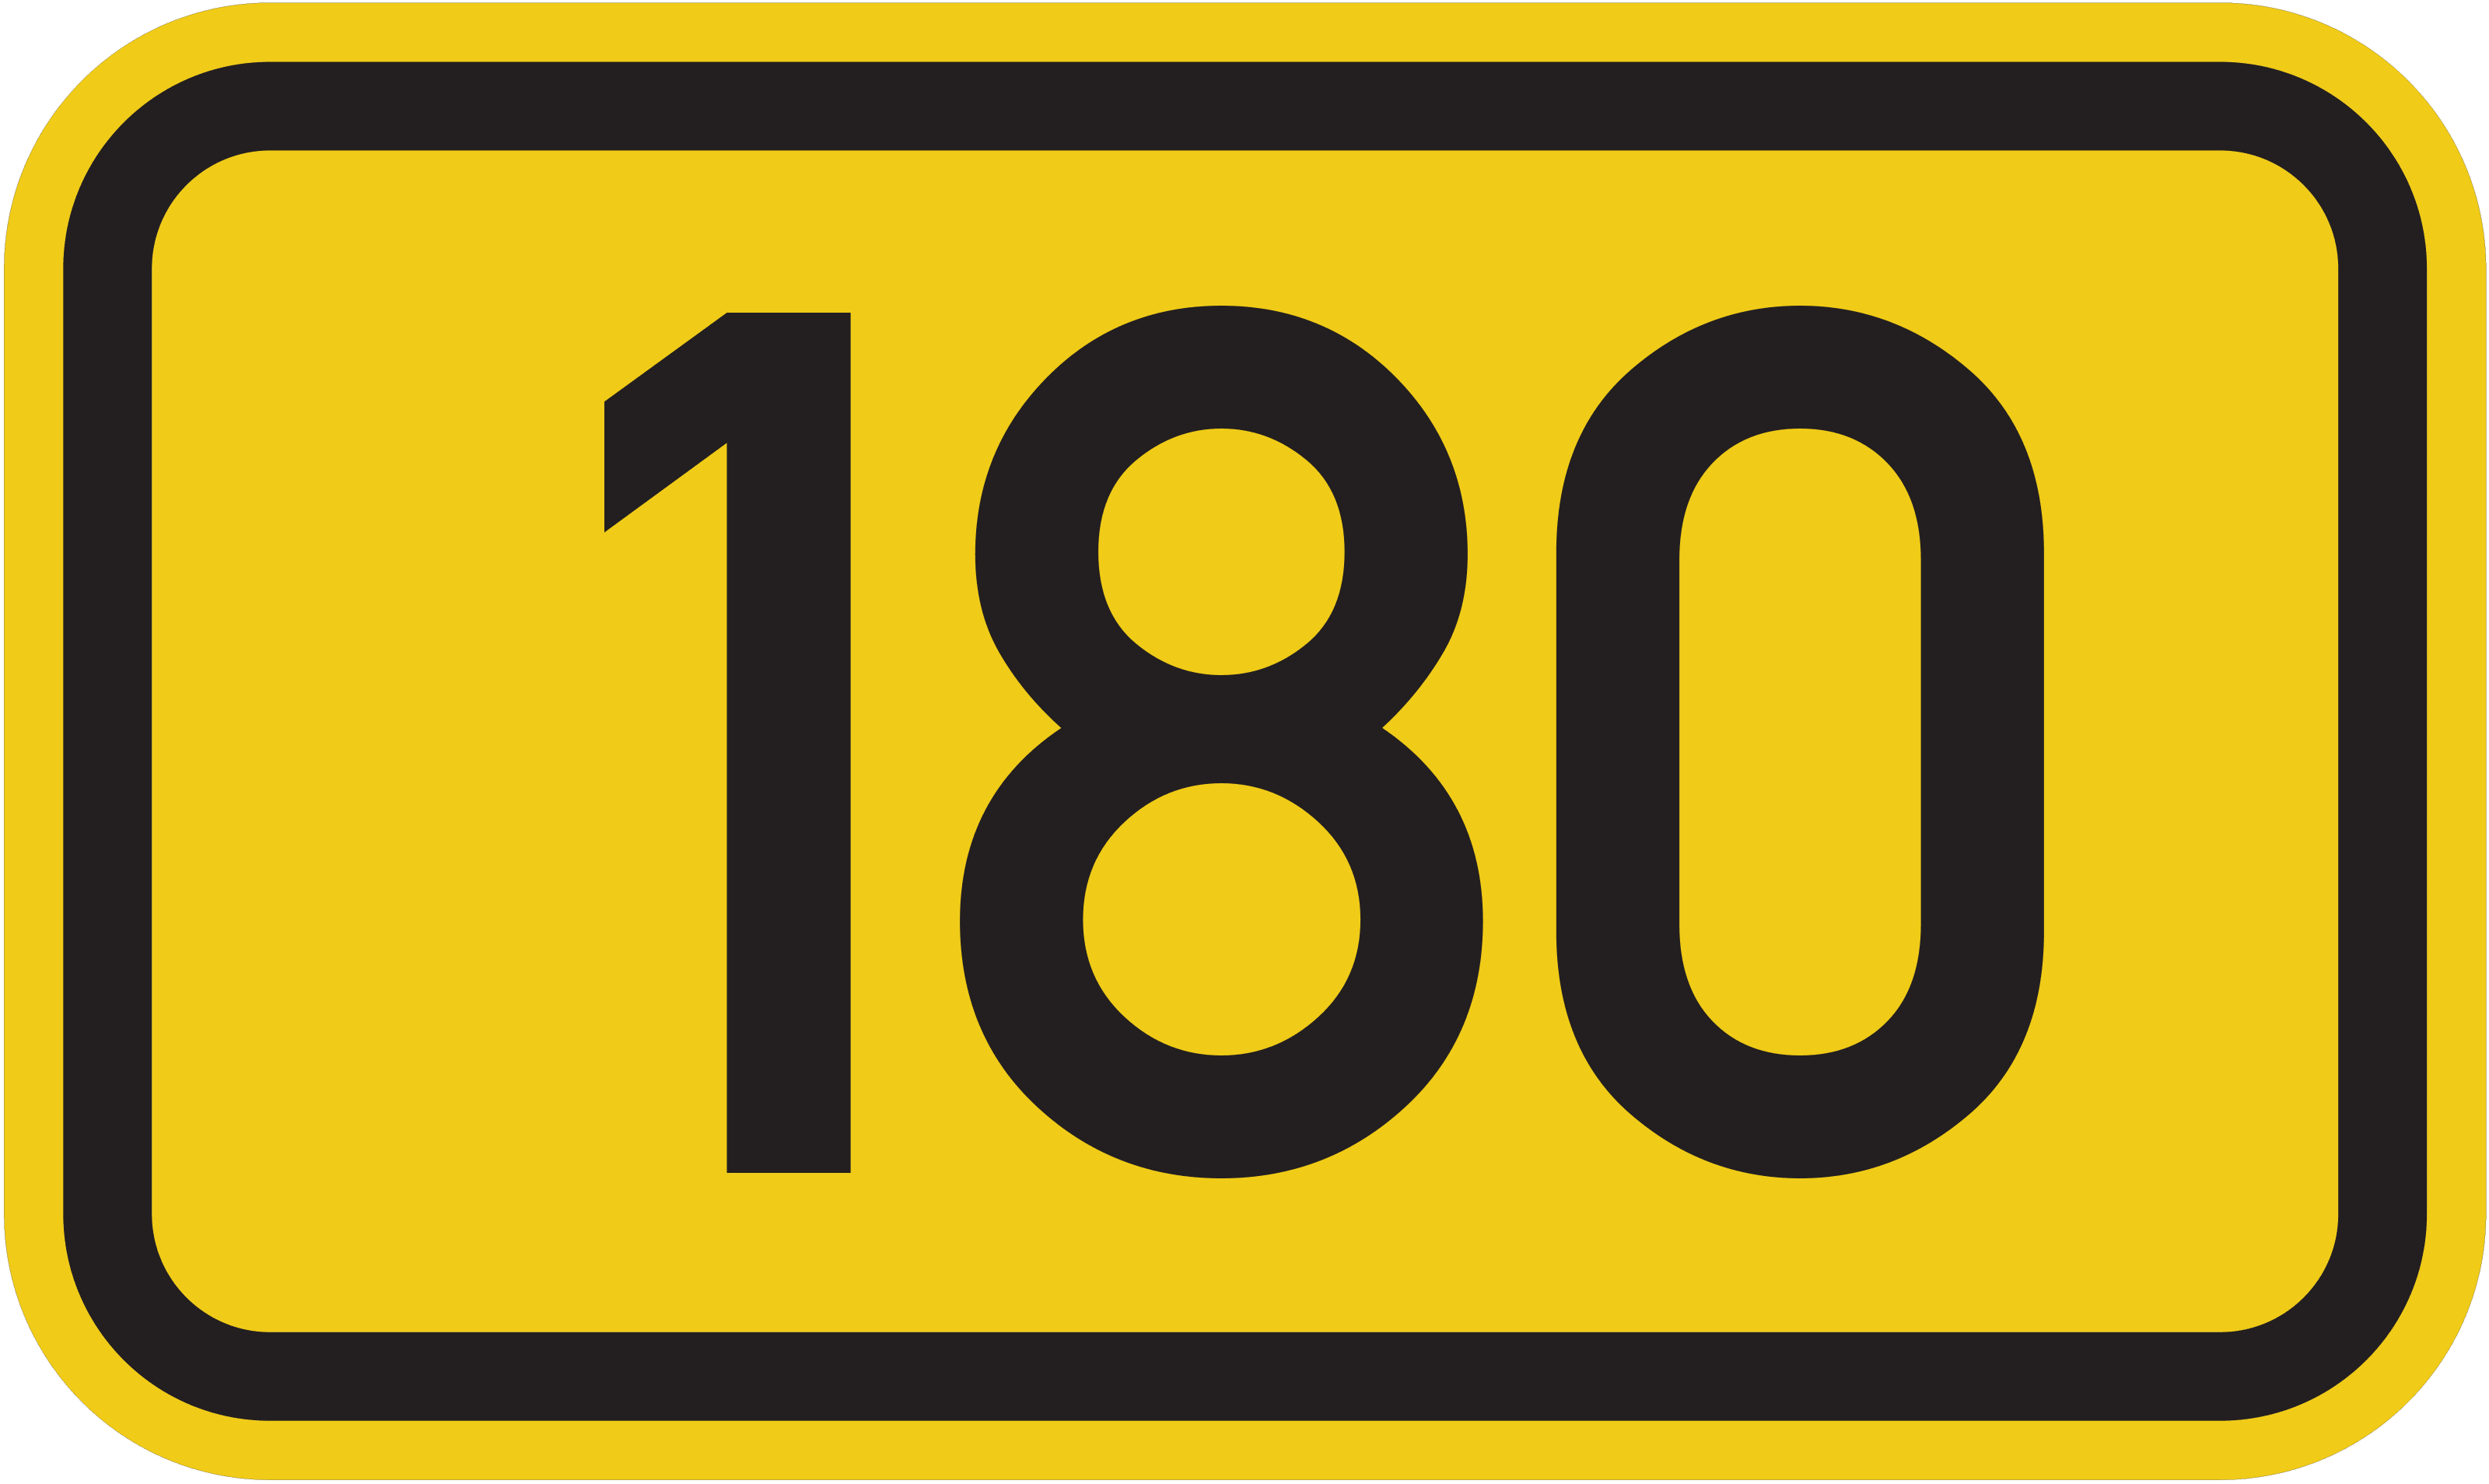 Bundesstraße B 180